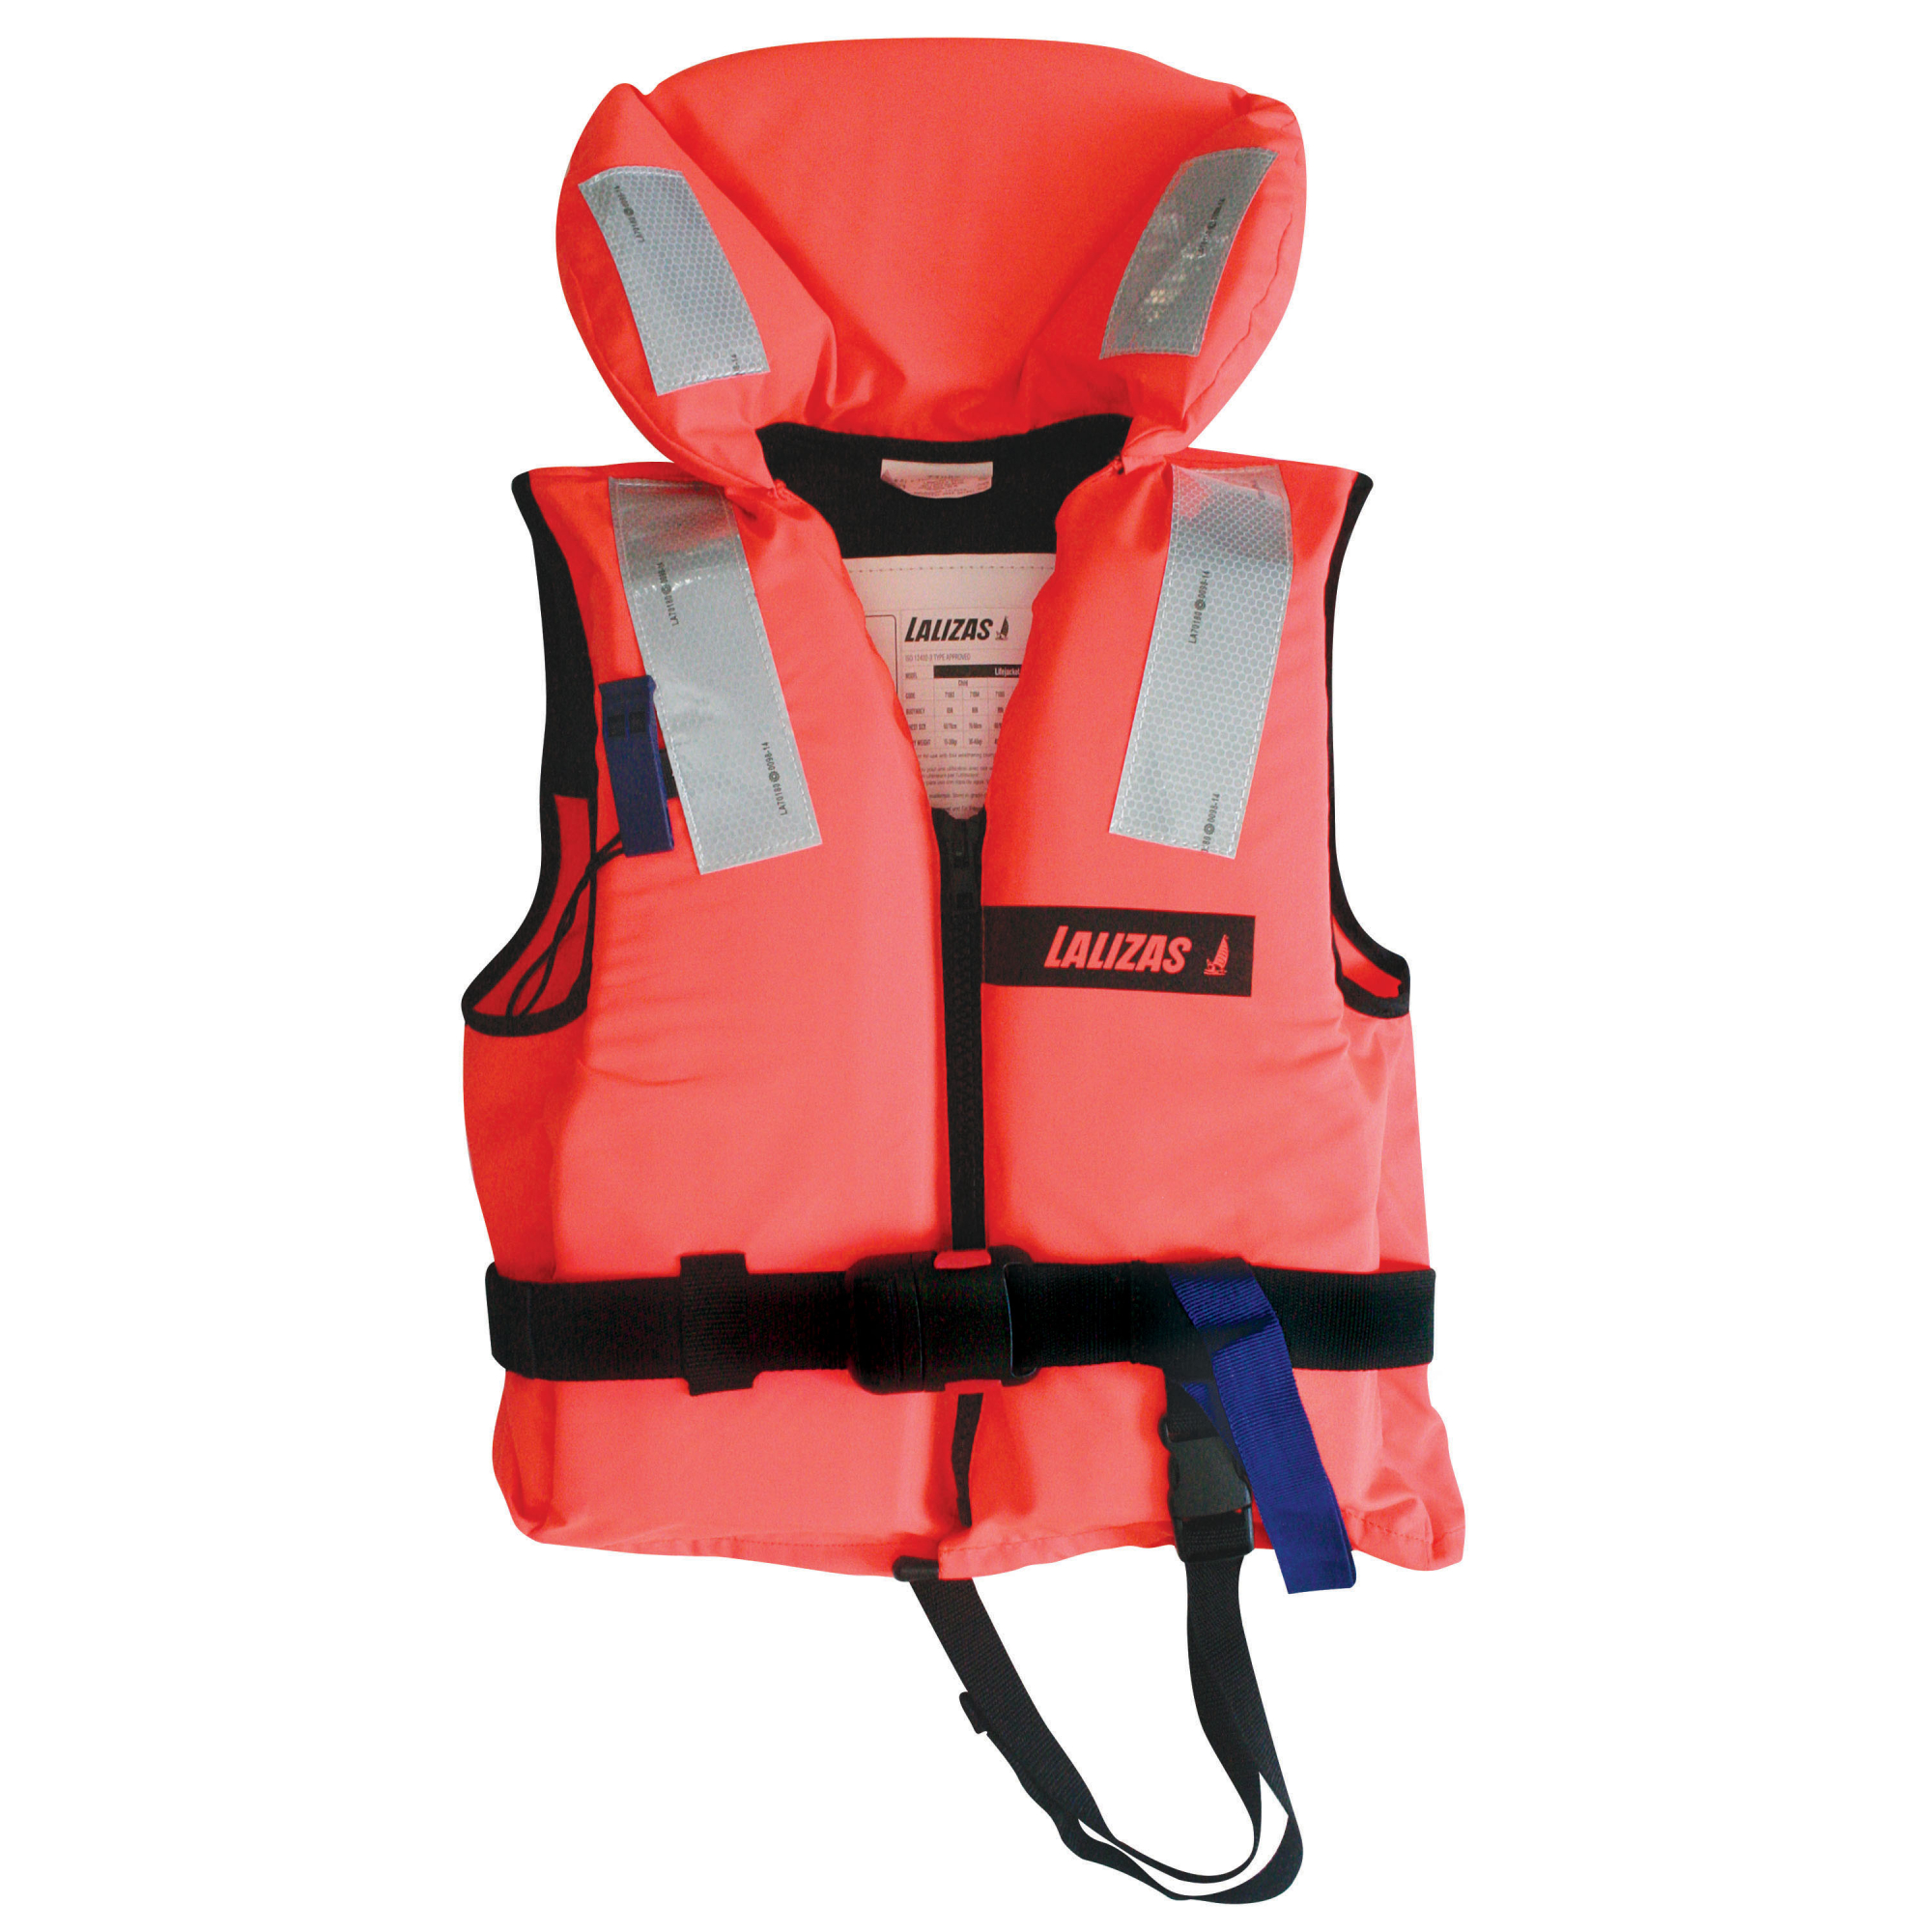 Пенопластовый спасательный жилет LALIZAS Lifejacket 100N 71079 ISO 12402-4 40-50кг обхват груди 80-90 см